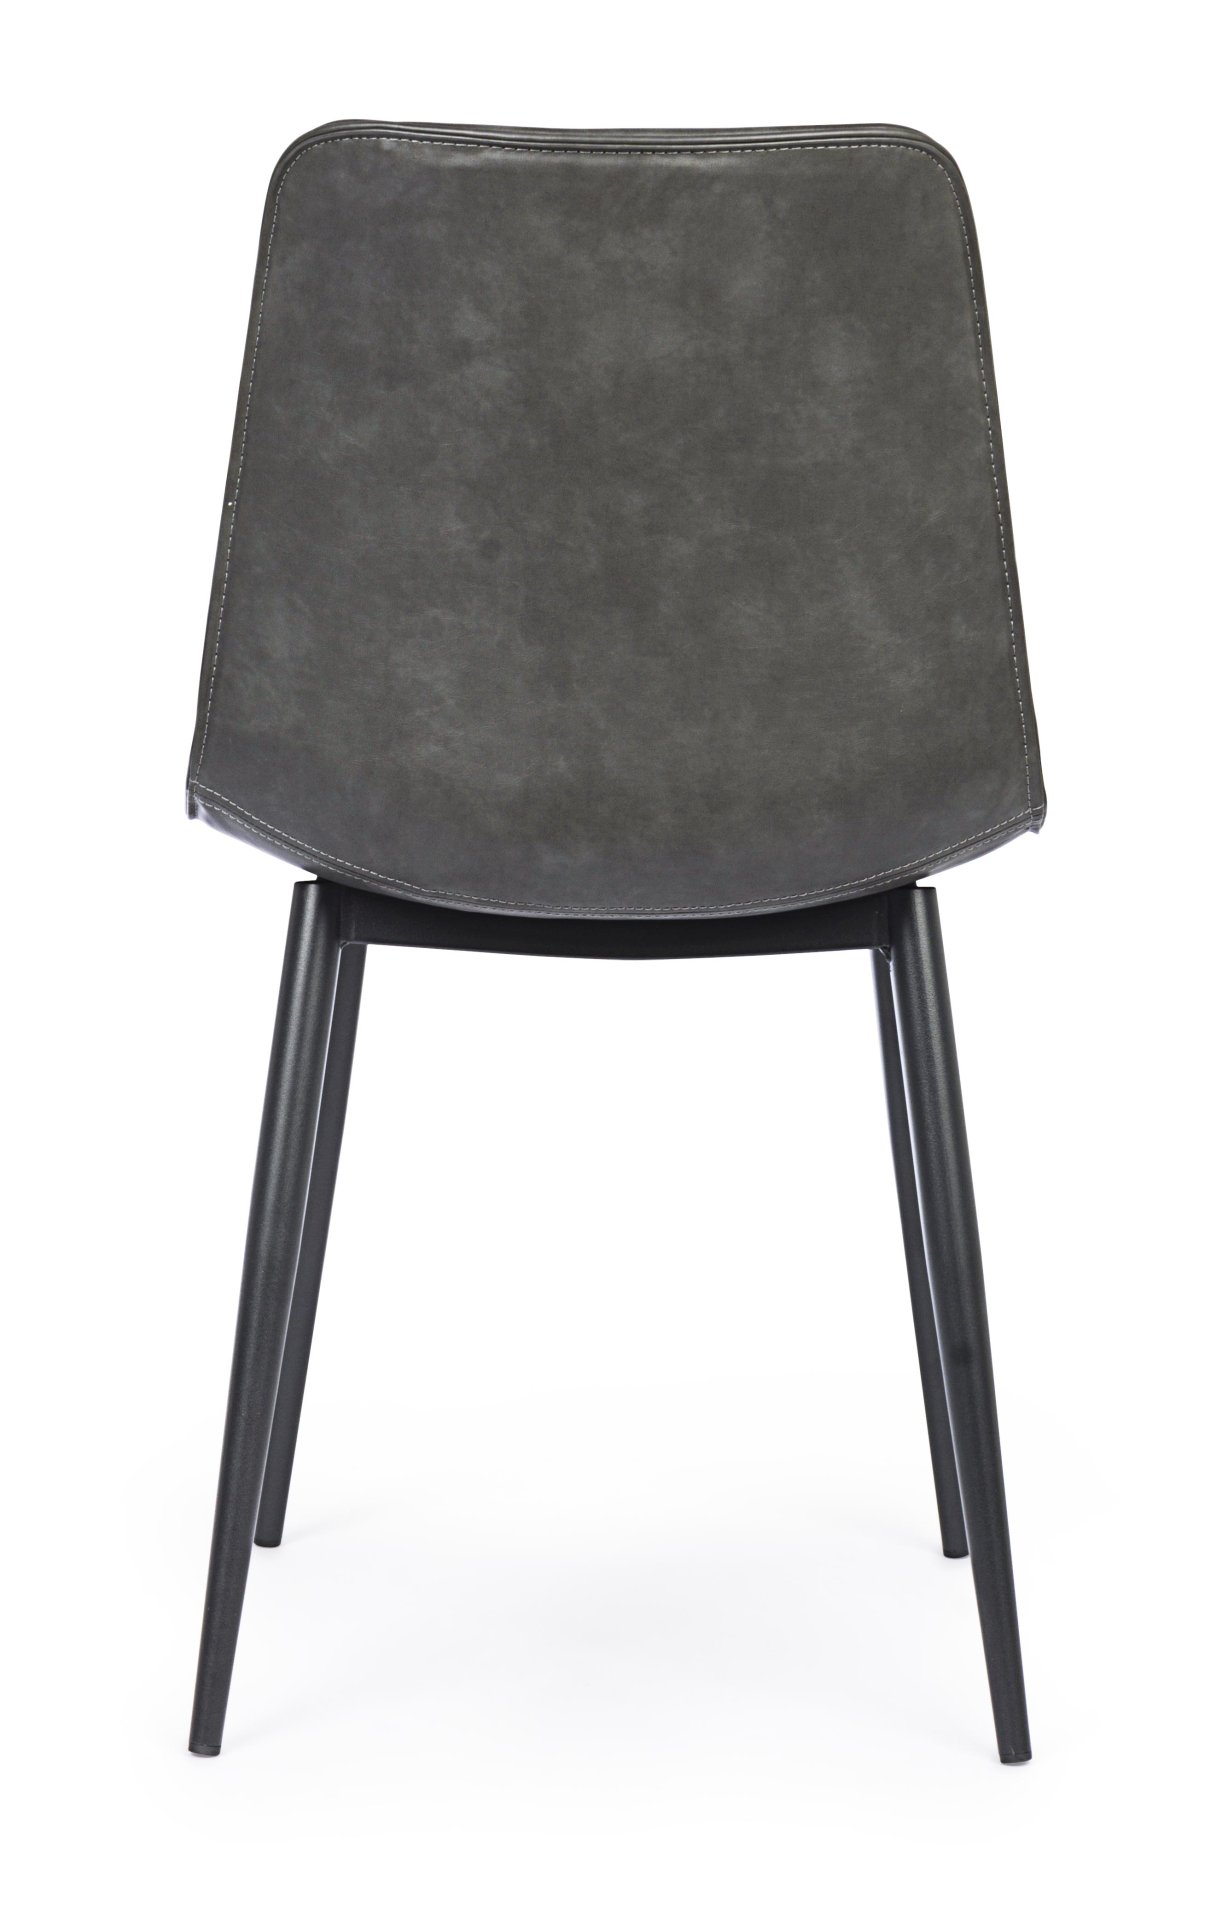 Der Esszimmerstuhl Kyra überzeugt mit seinem modernen Design. Gefertigt wurde der Stuhl aus Kunstleder, welcher einen Anthrazit Farbton besitzt. Das Gestell ist aus Metall und ist Schwarz. Die Sitzhöhe beträgt 44 cm.